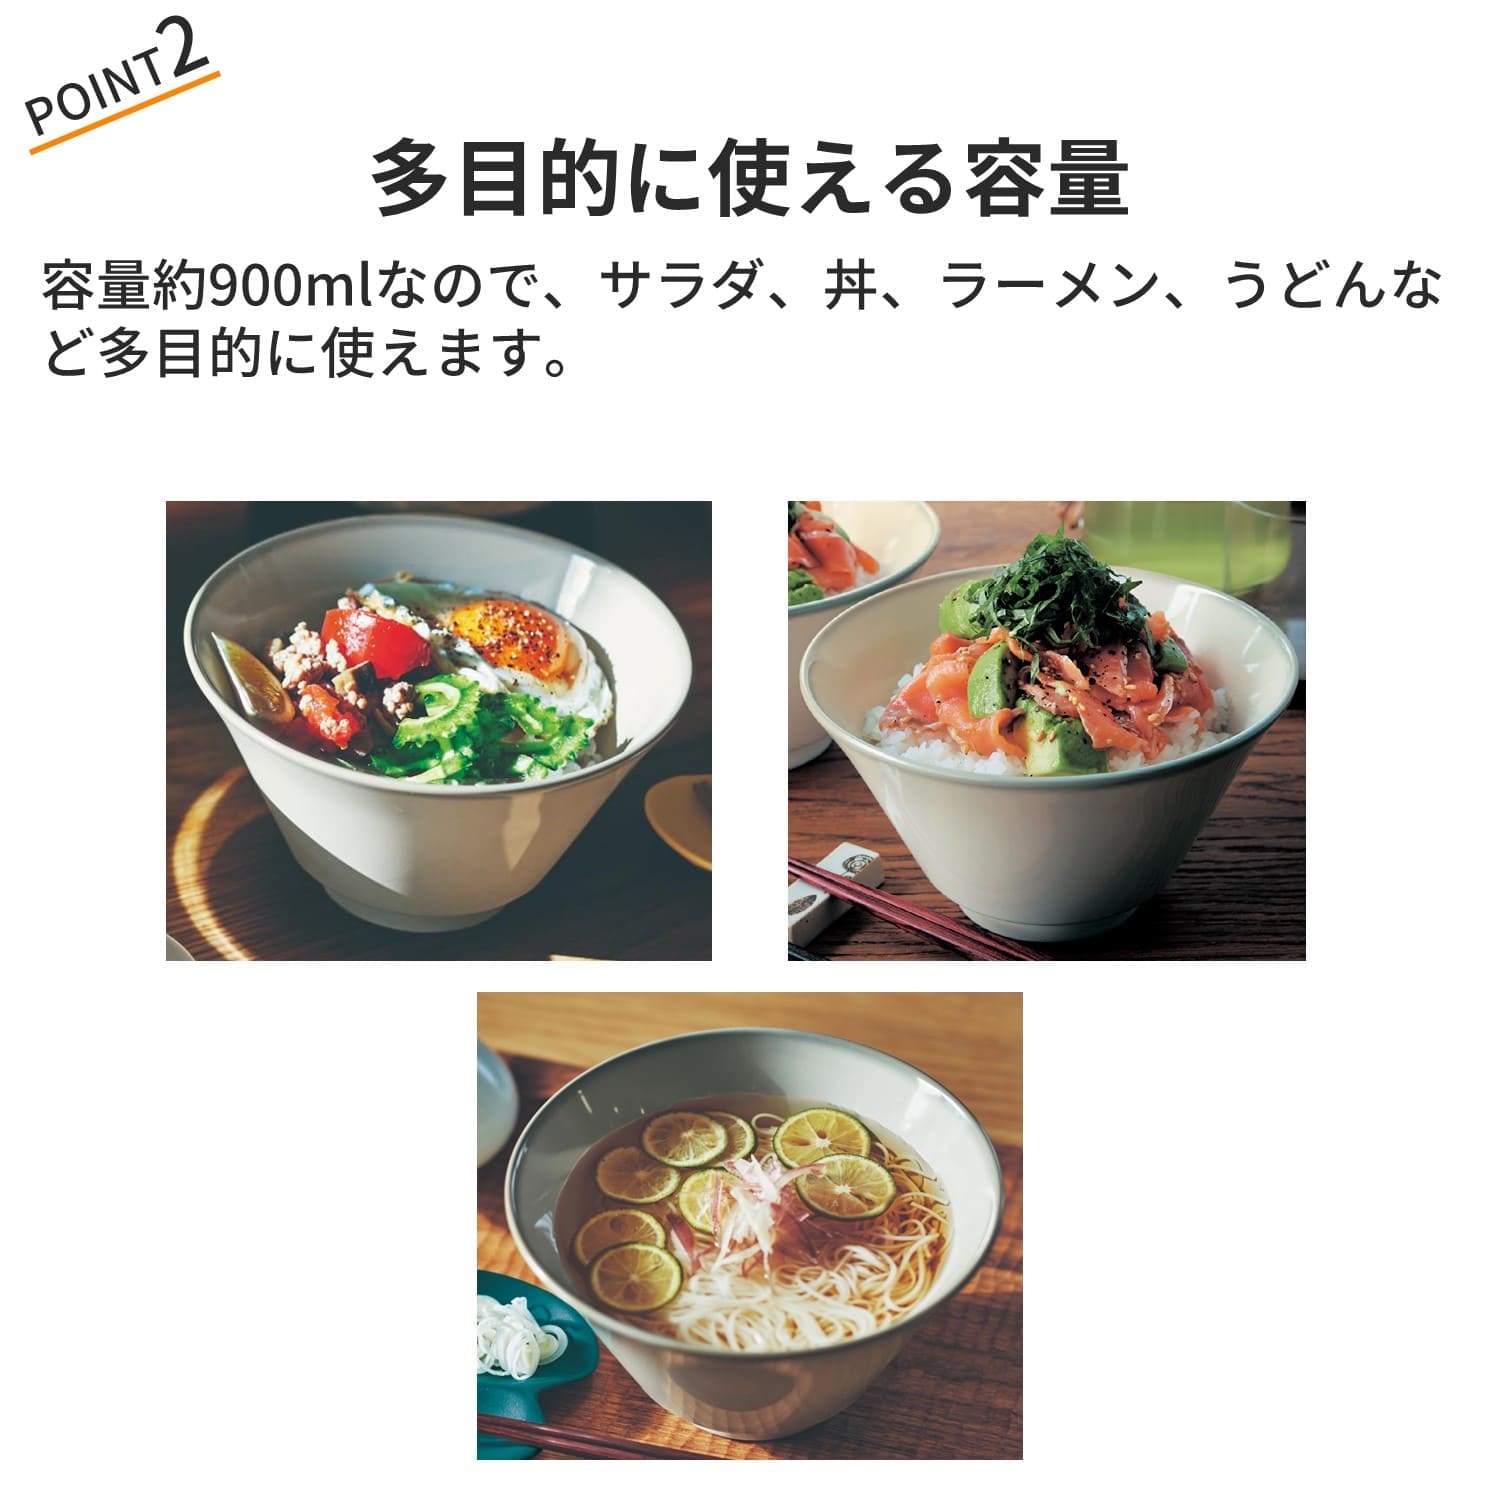 おいしく食べるどんぶり2色セット[日本製] 【どんぶり/小鉢/茶碗/カップ】 -